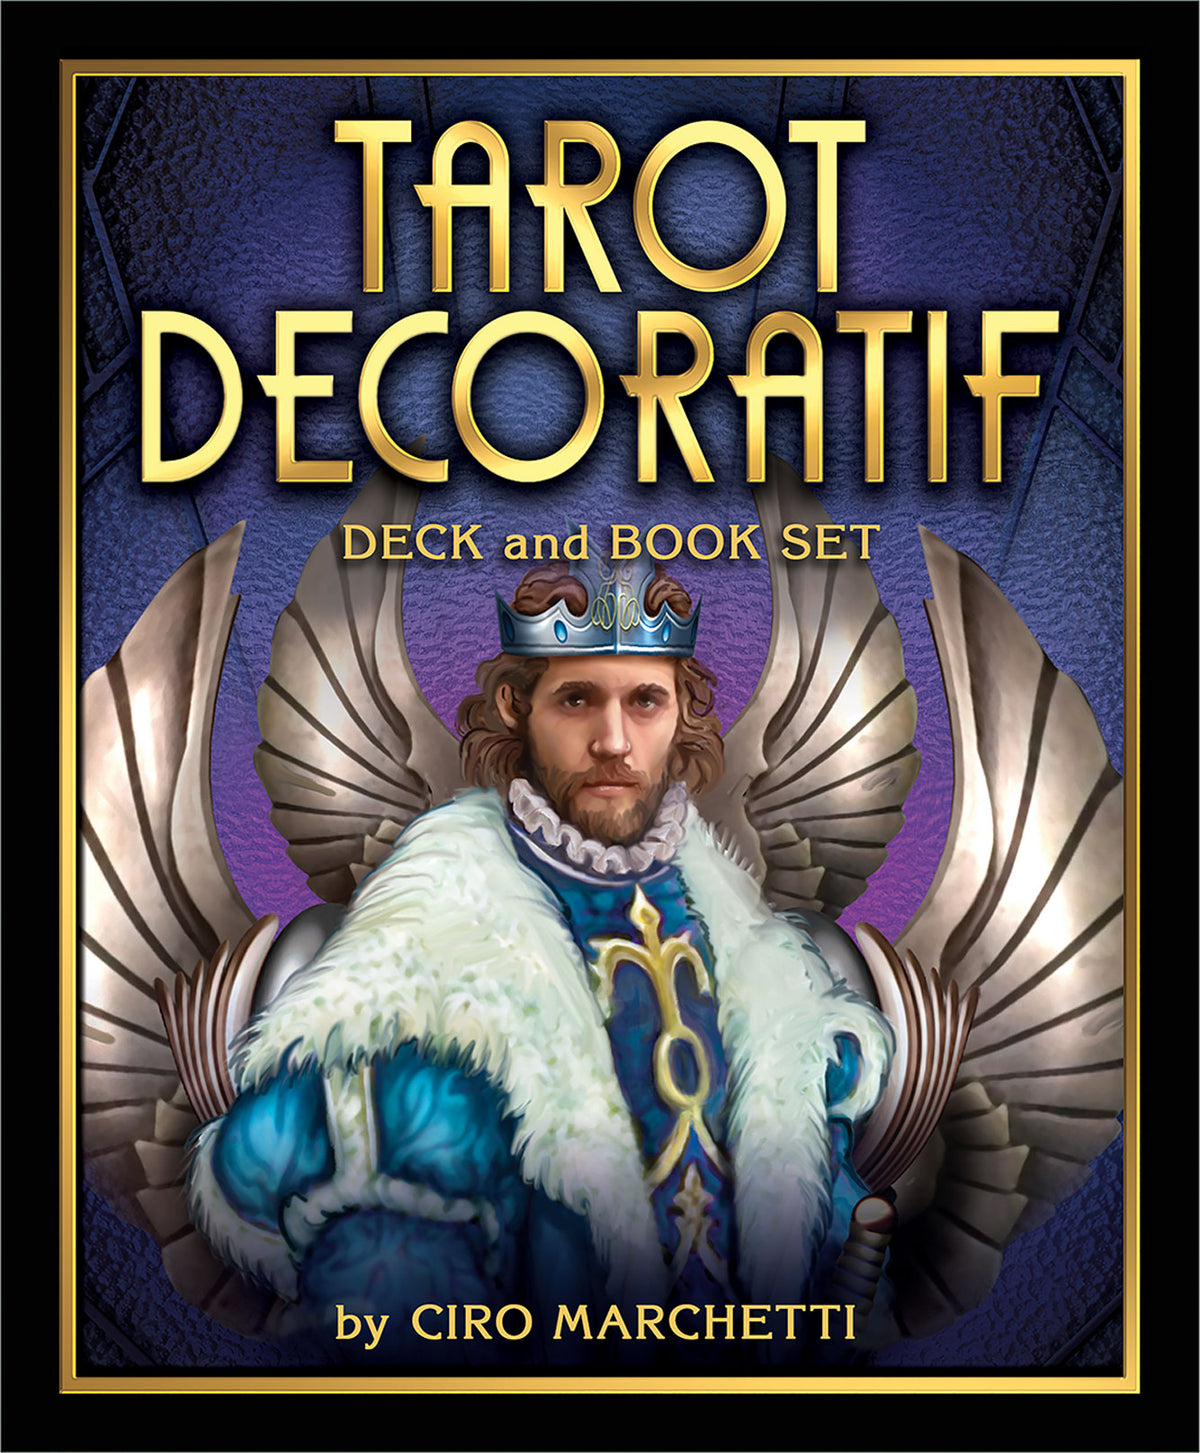 Tarot Decoratif Deck and Book Set by Ciro Marchetti